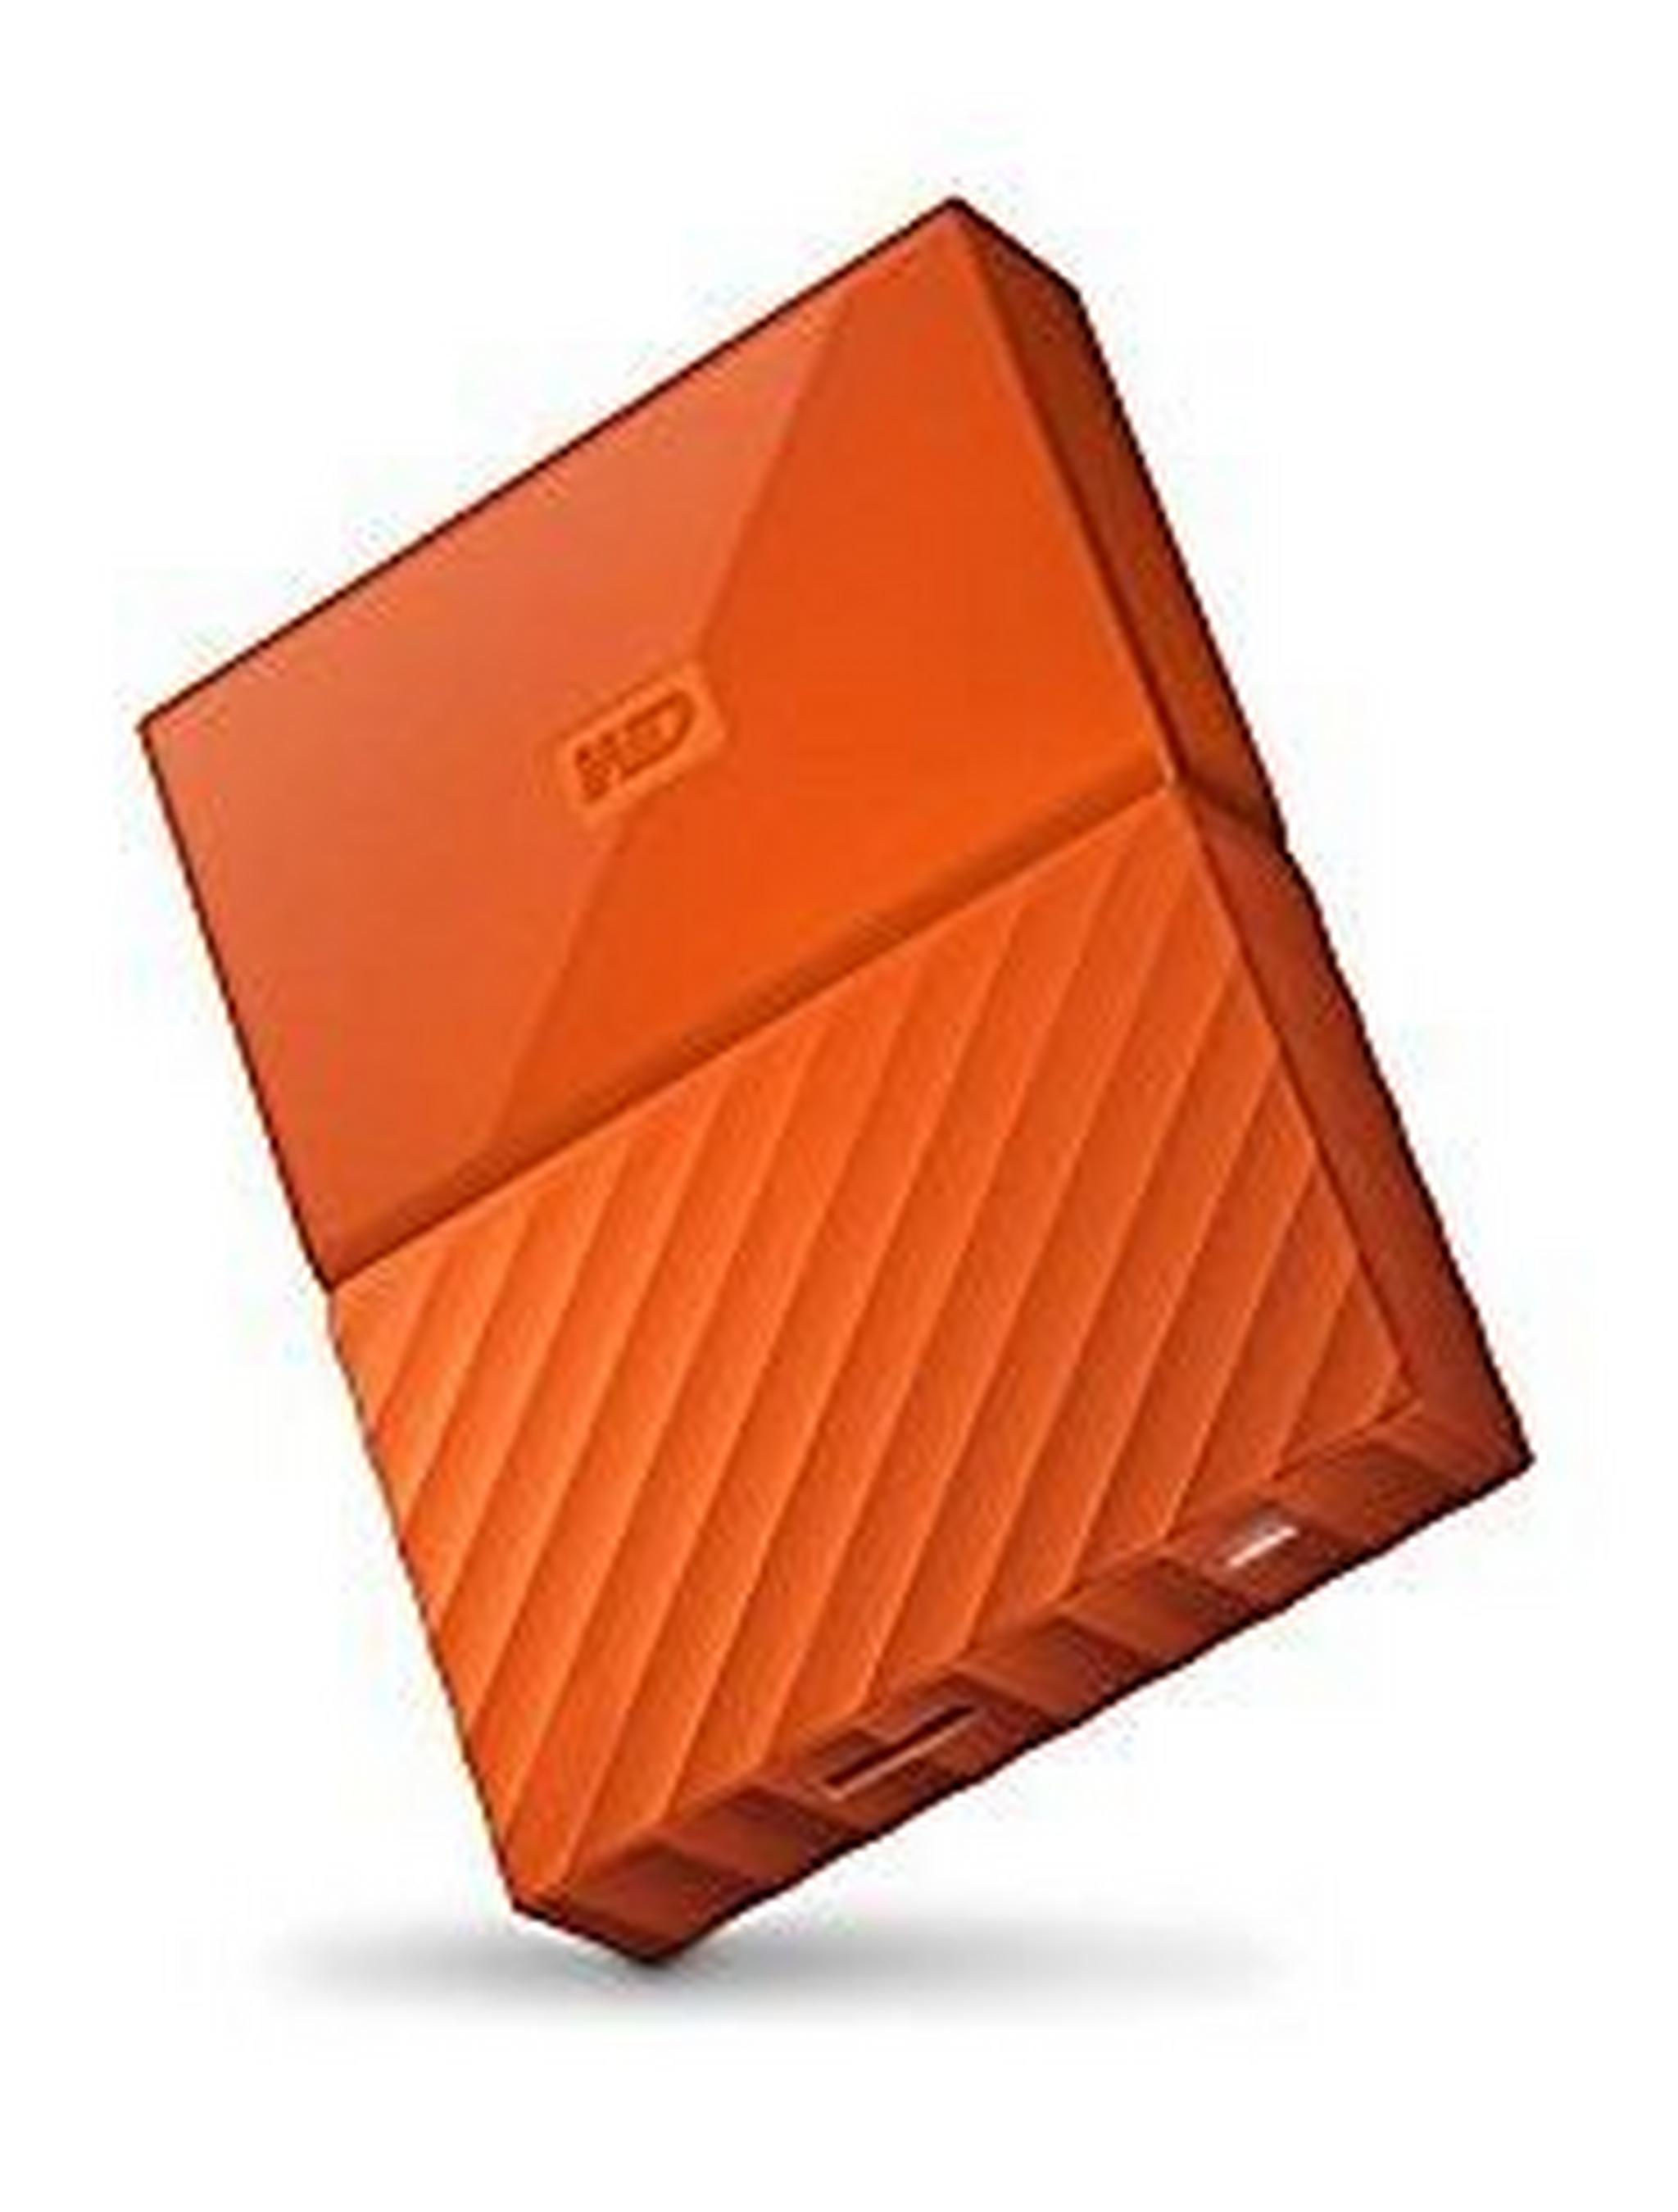 WD 1TB My Passport USB 3.0 External Hard Drive - Orange